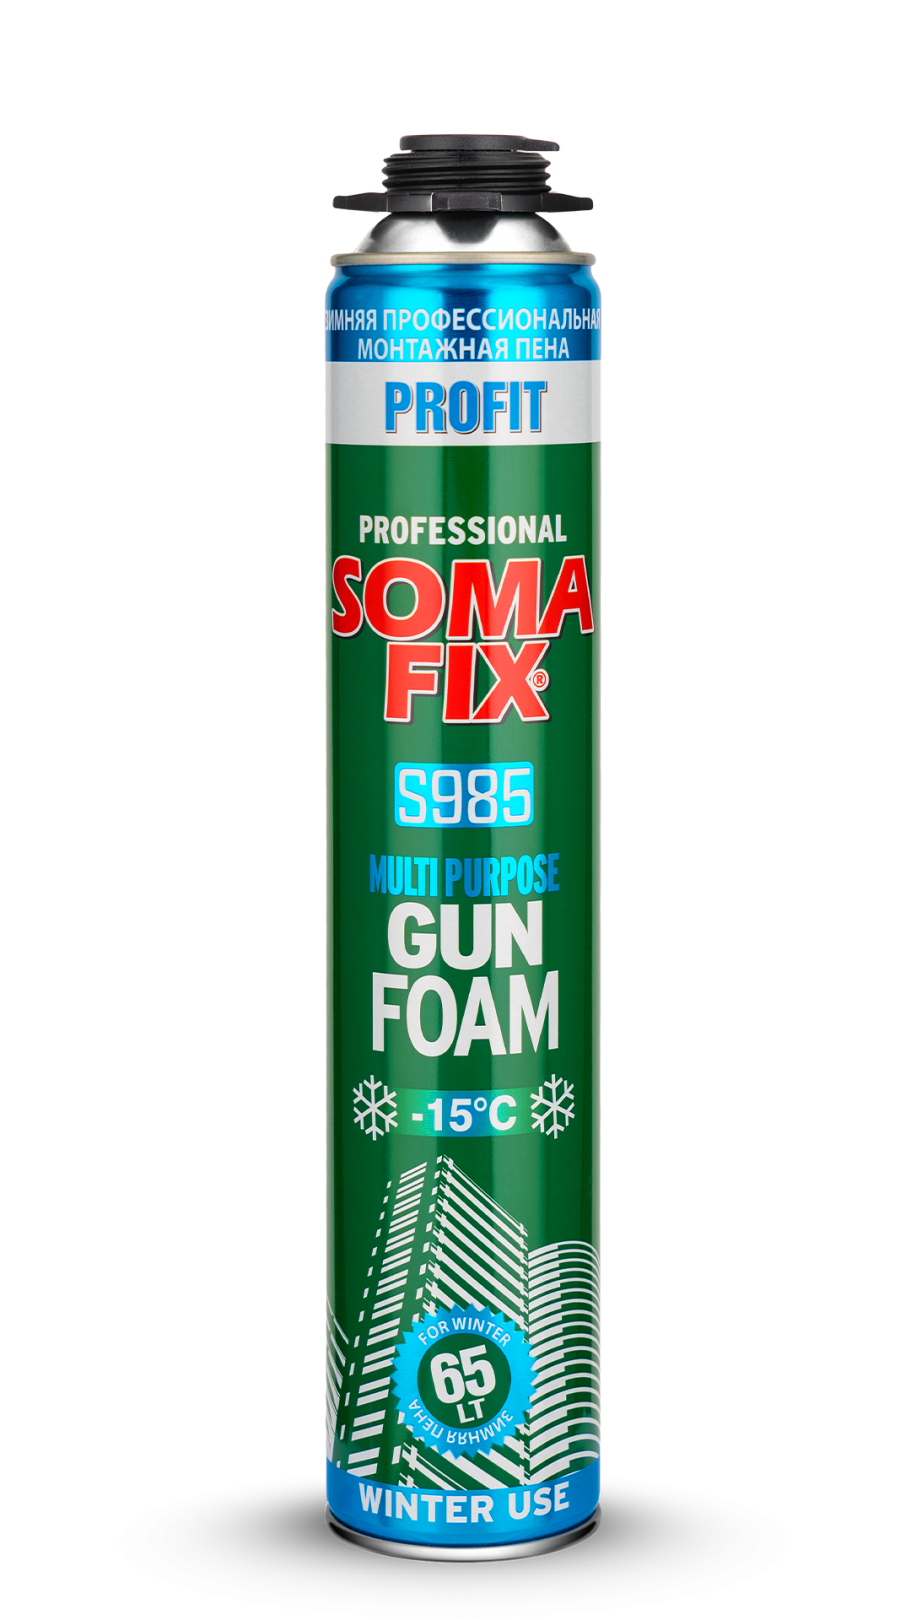 Пена монтажная профессиональная SOMA FIX Profit 800 мл (65 л выход), зимняя